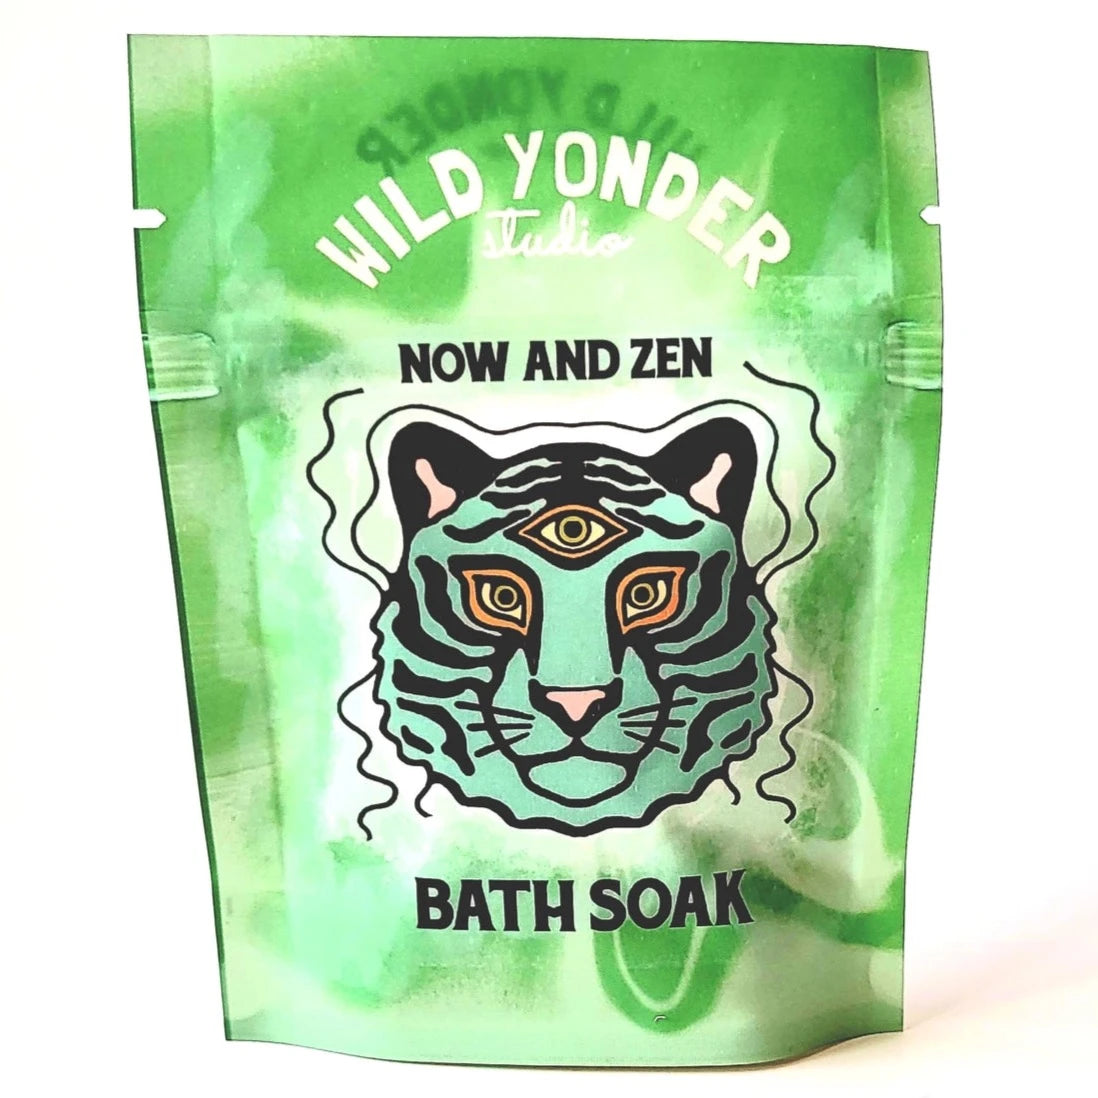 Now and Zen Bath Salt Soak